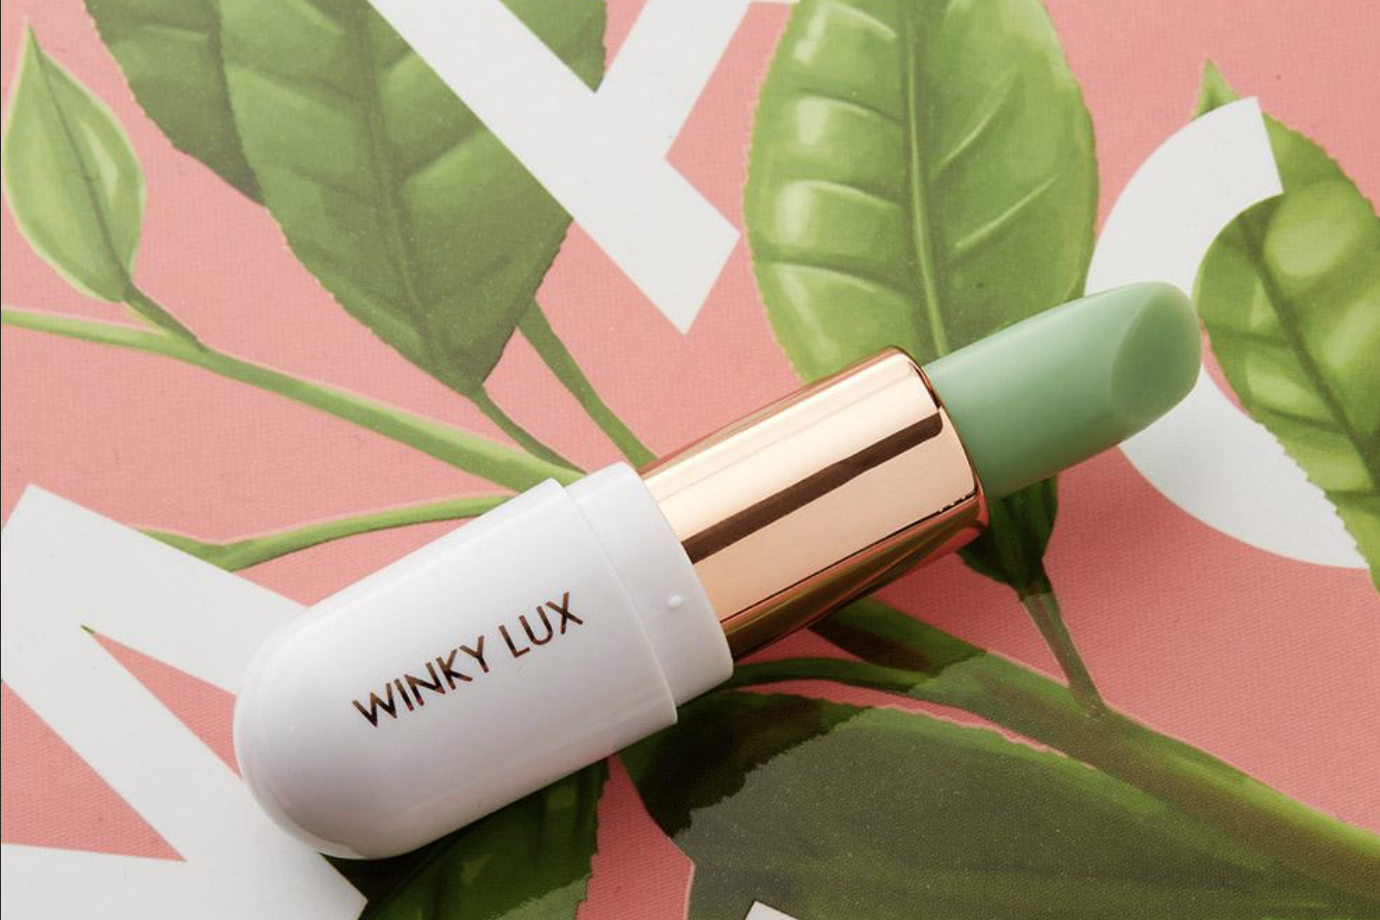 45天上新一次的互联网快美妆品牌 Winky Lux 完成 600万美元 A 轮融资，将增设体验式快闪店